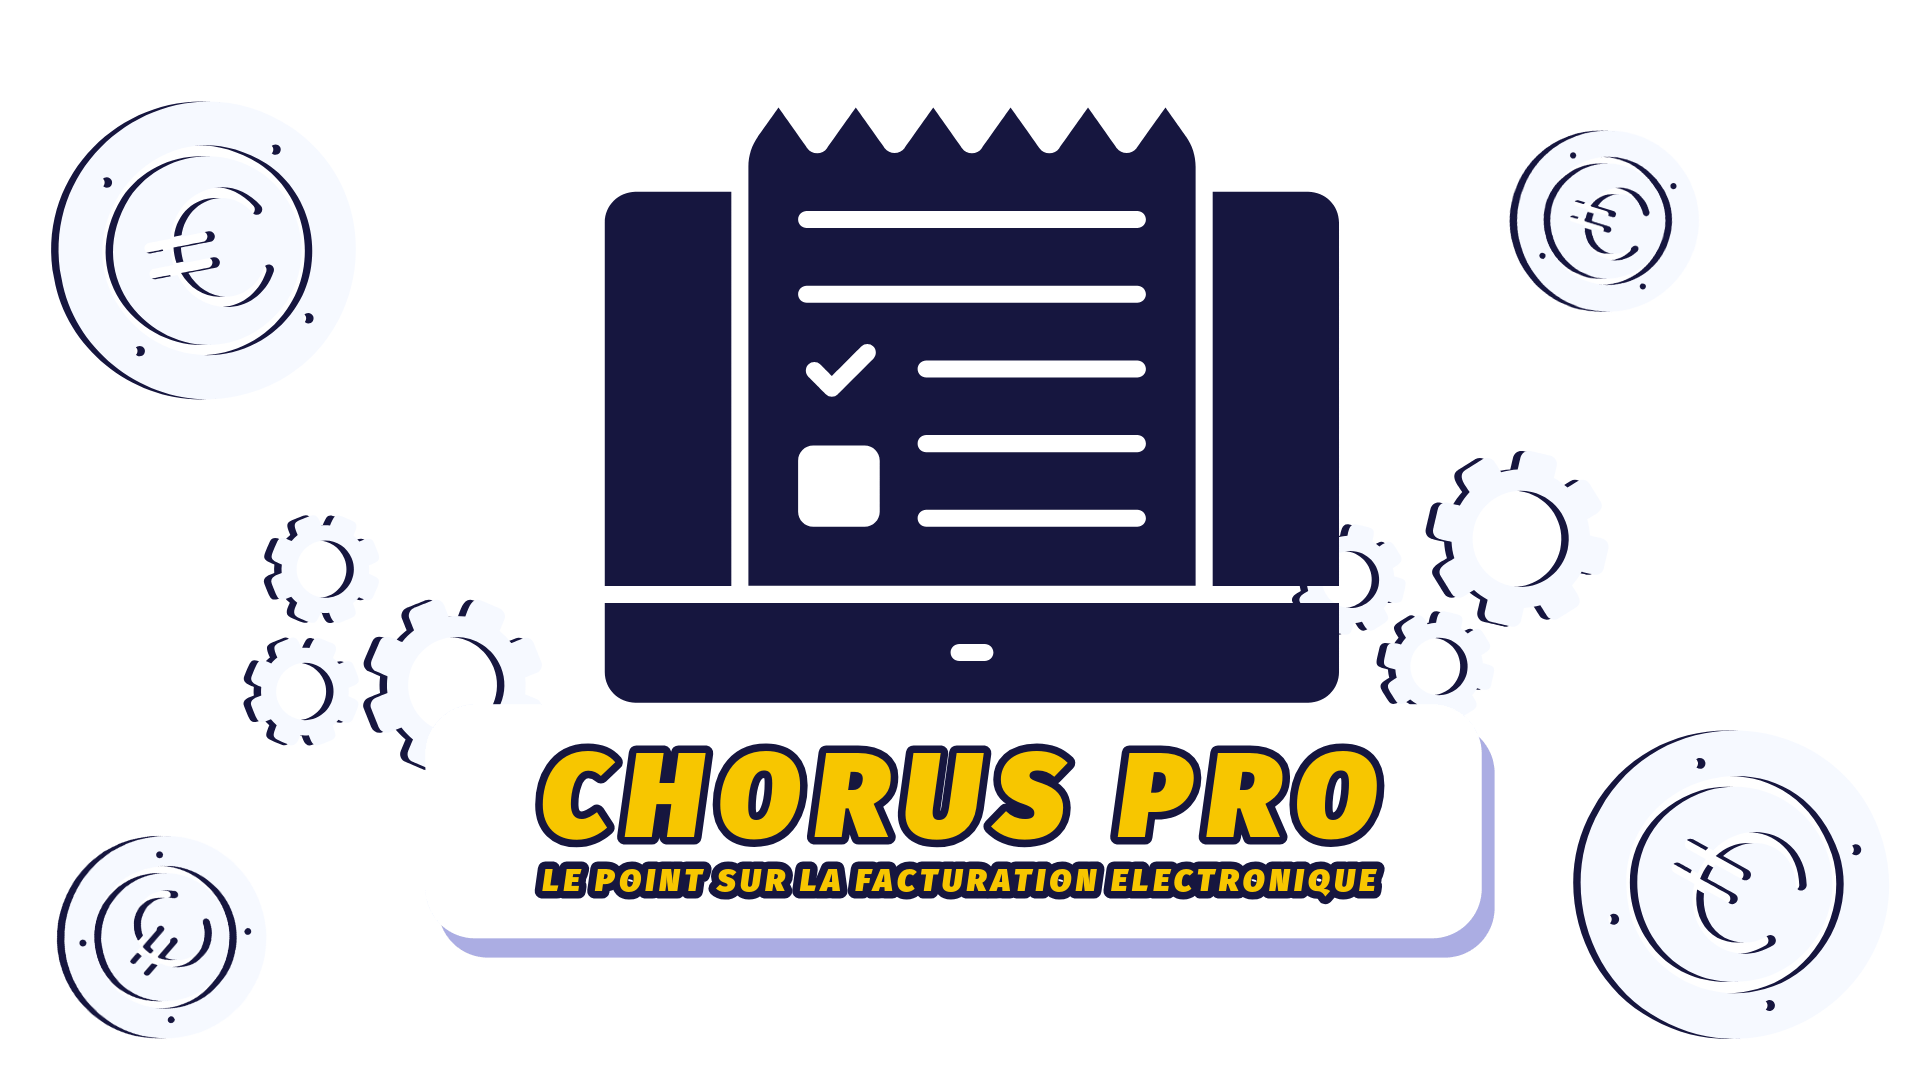 Chorus-pro-facturation-electronique